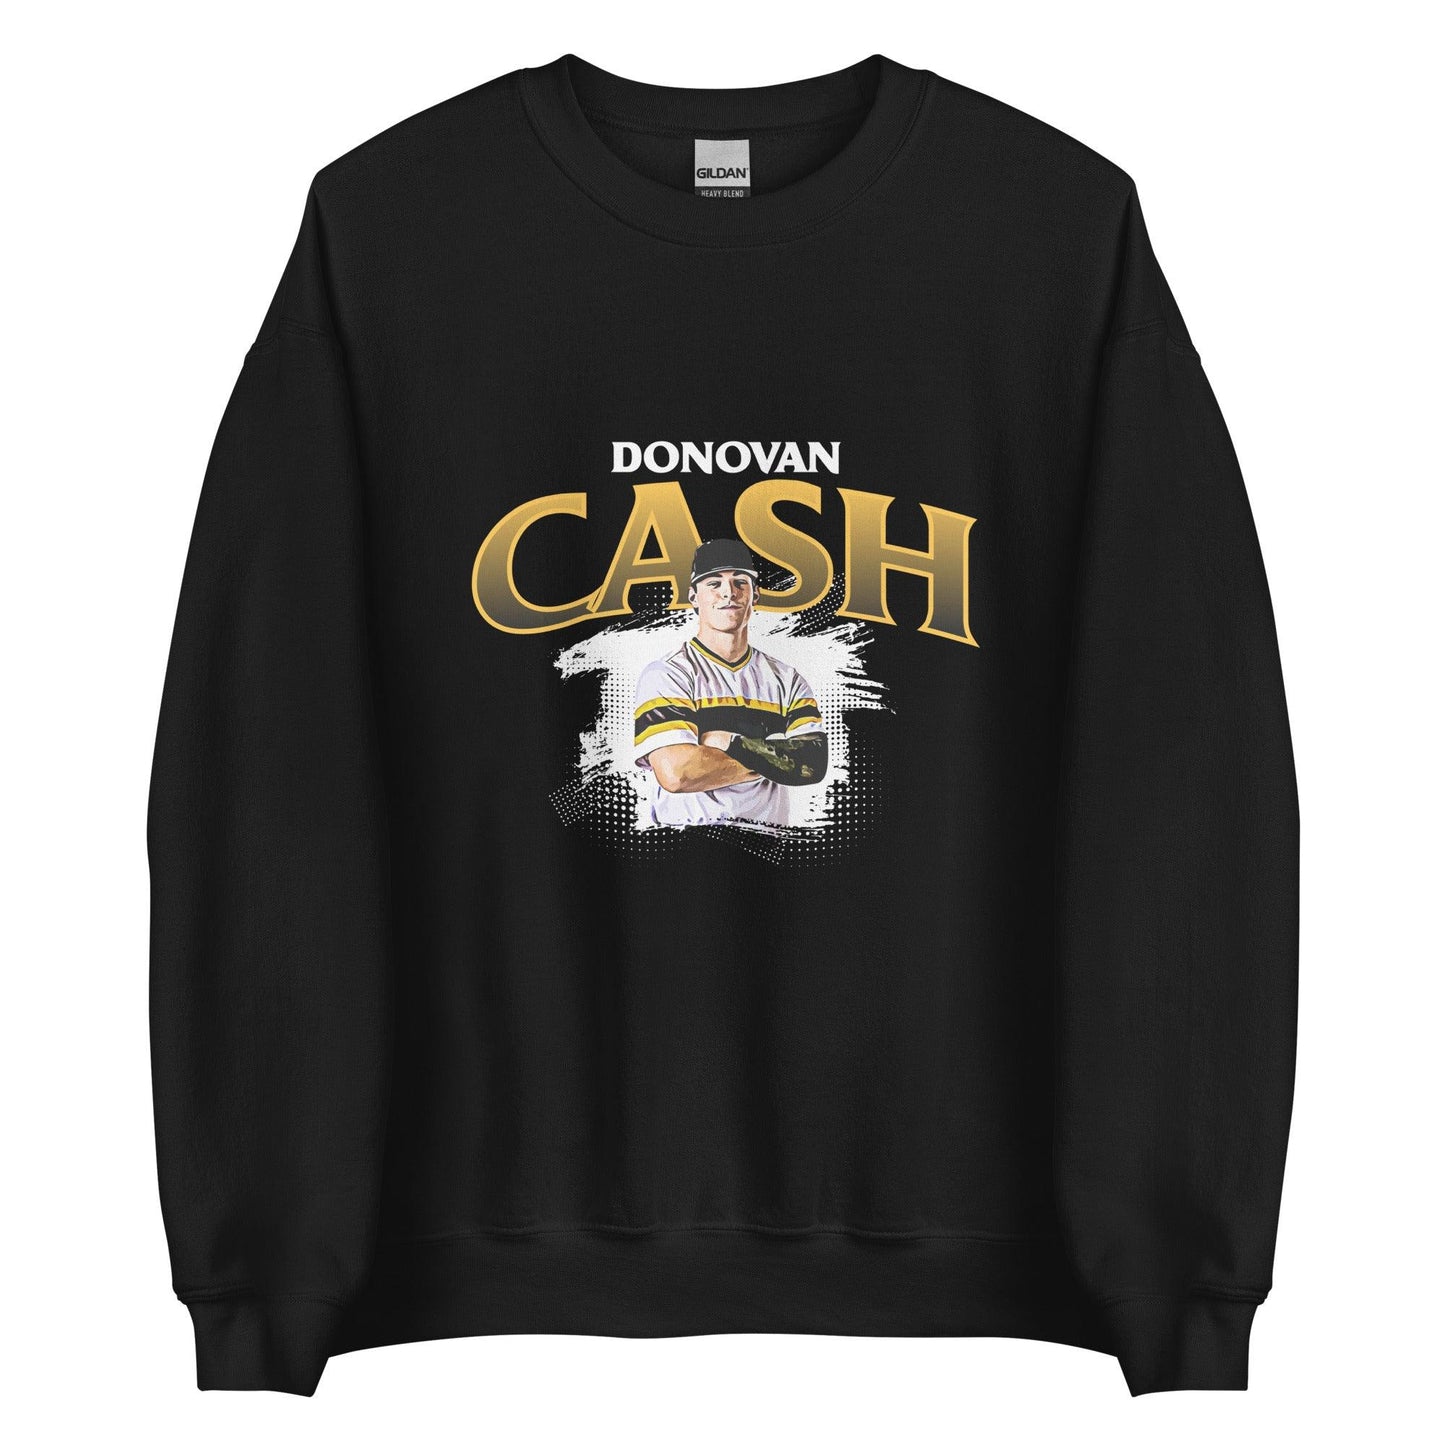 Donovan Cash "Stay Ready" Sweatshirt - Fan Arch